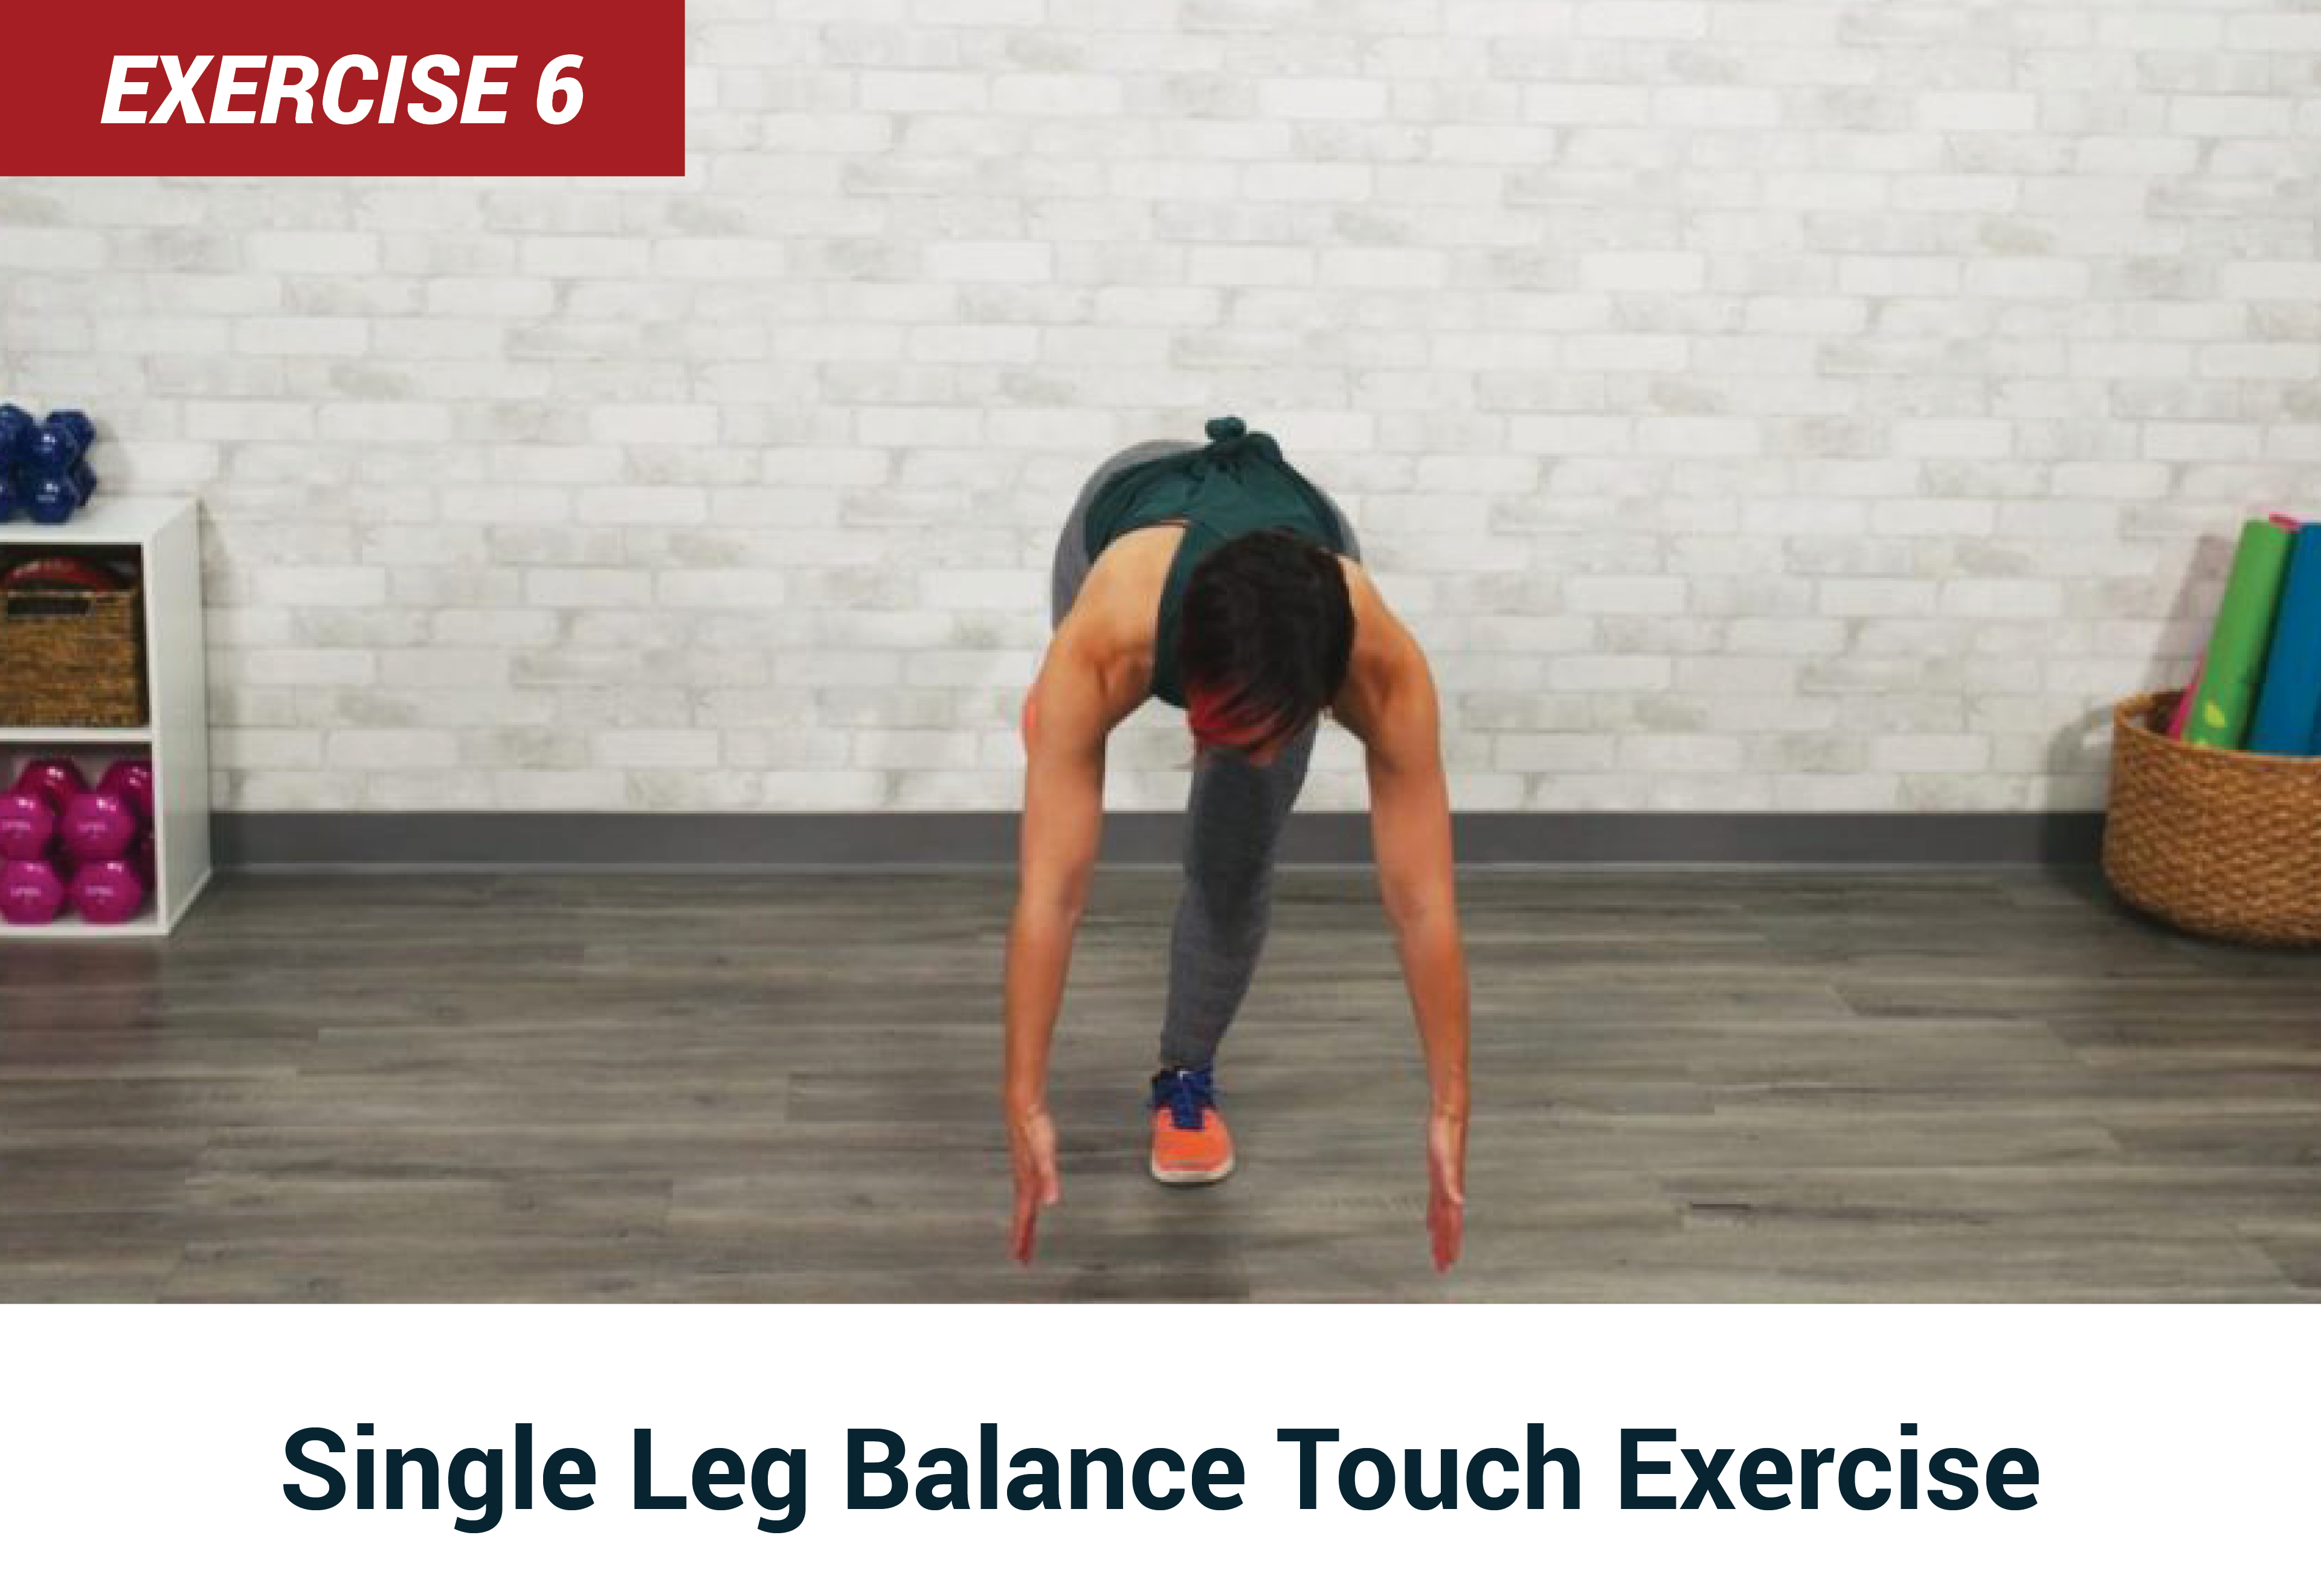 Single leg balance touch exercise